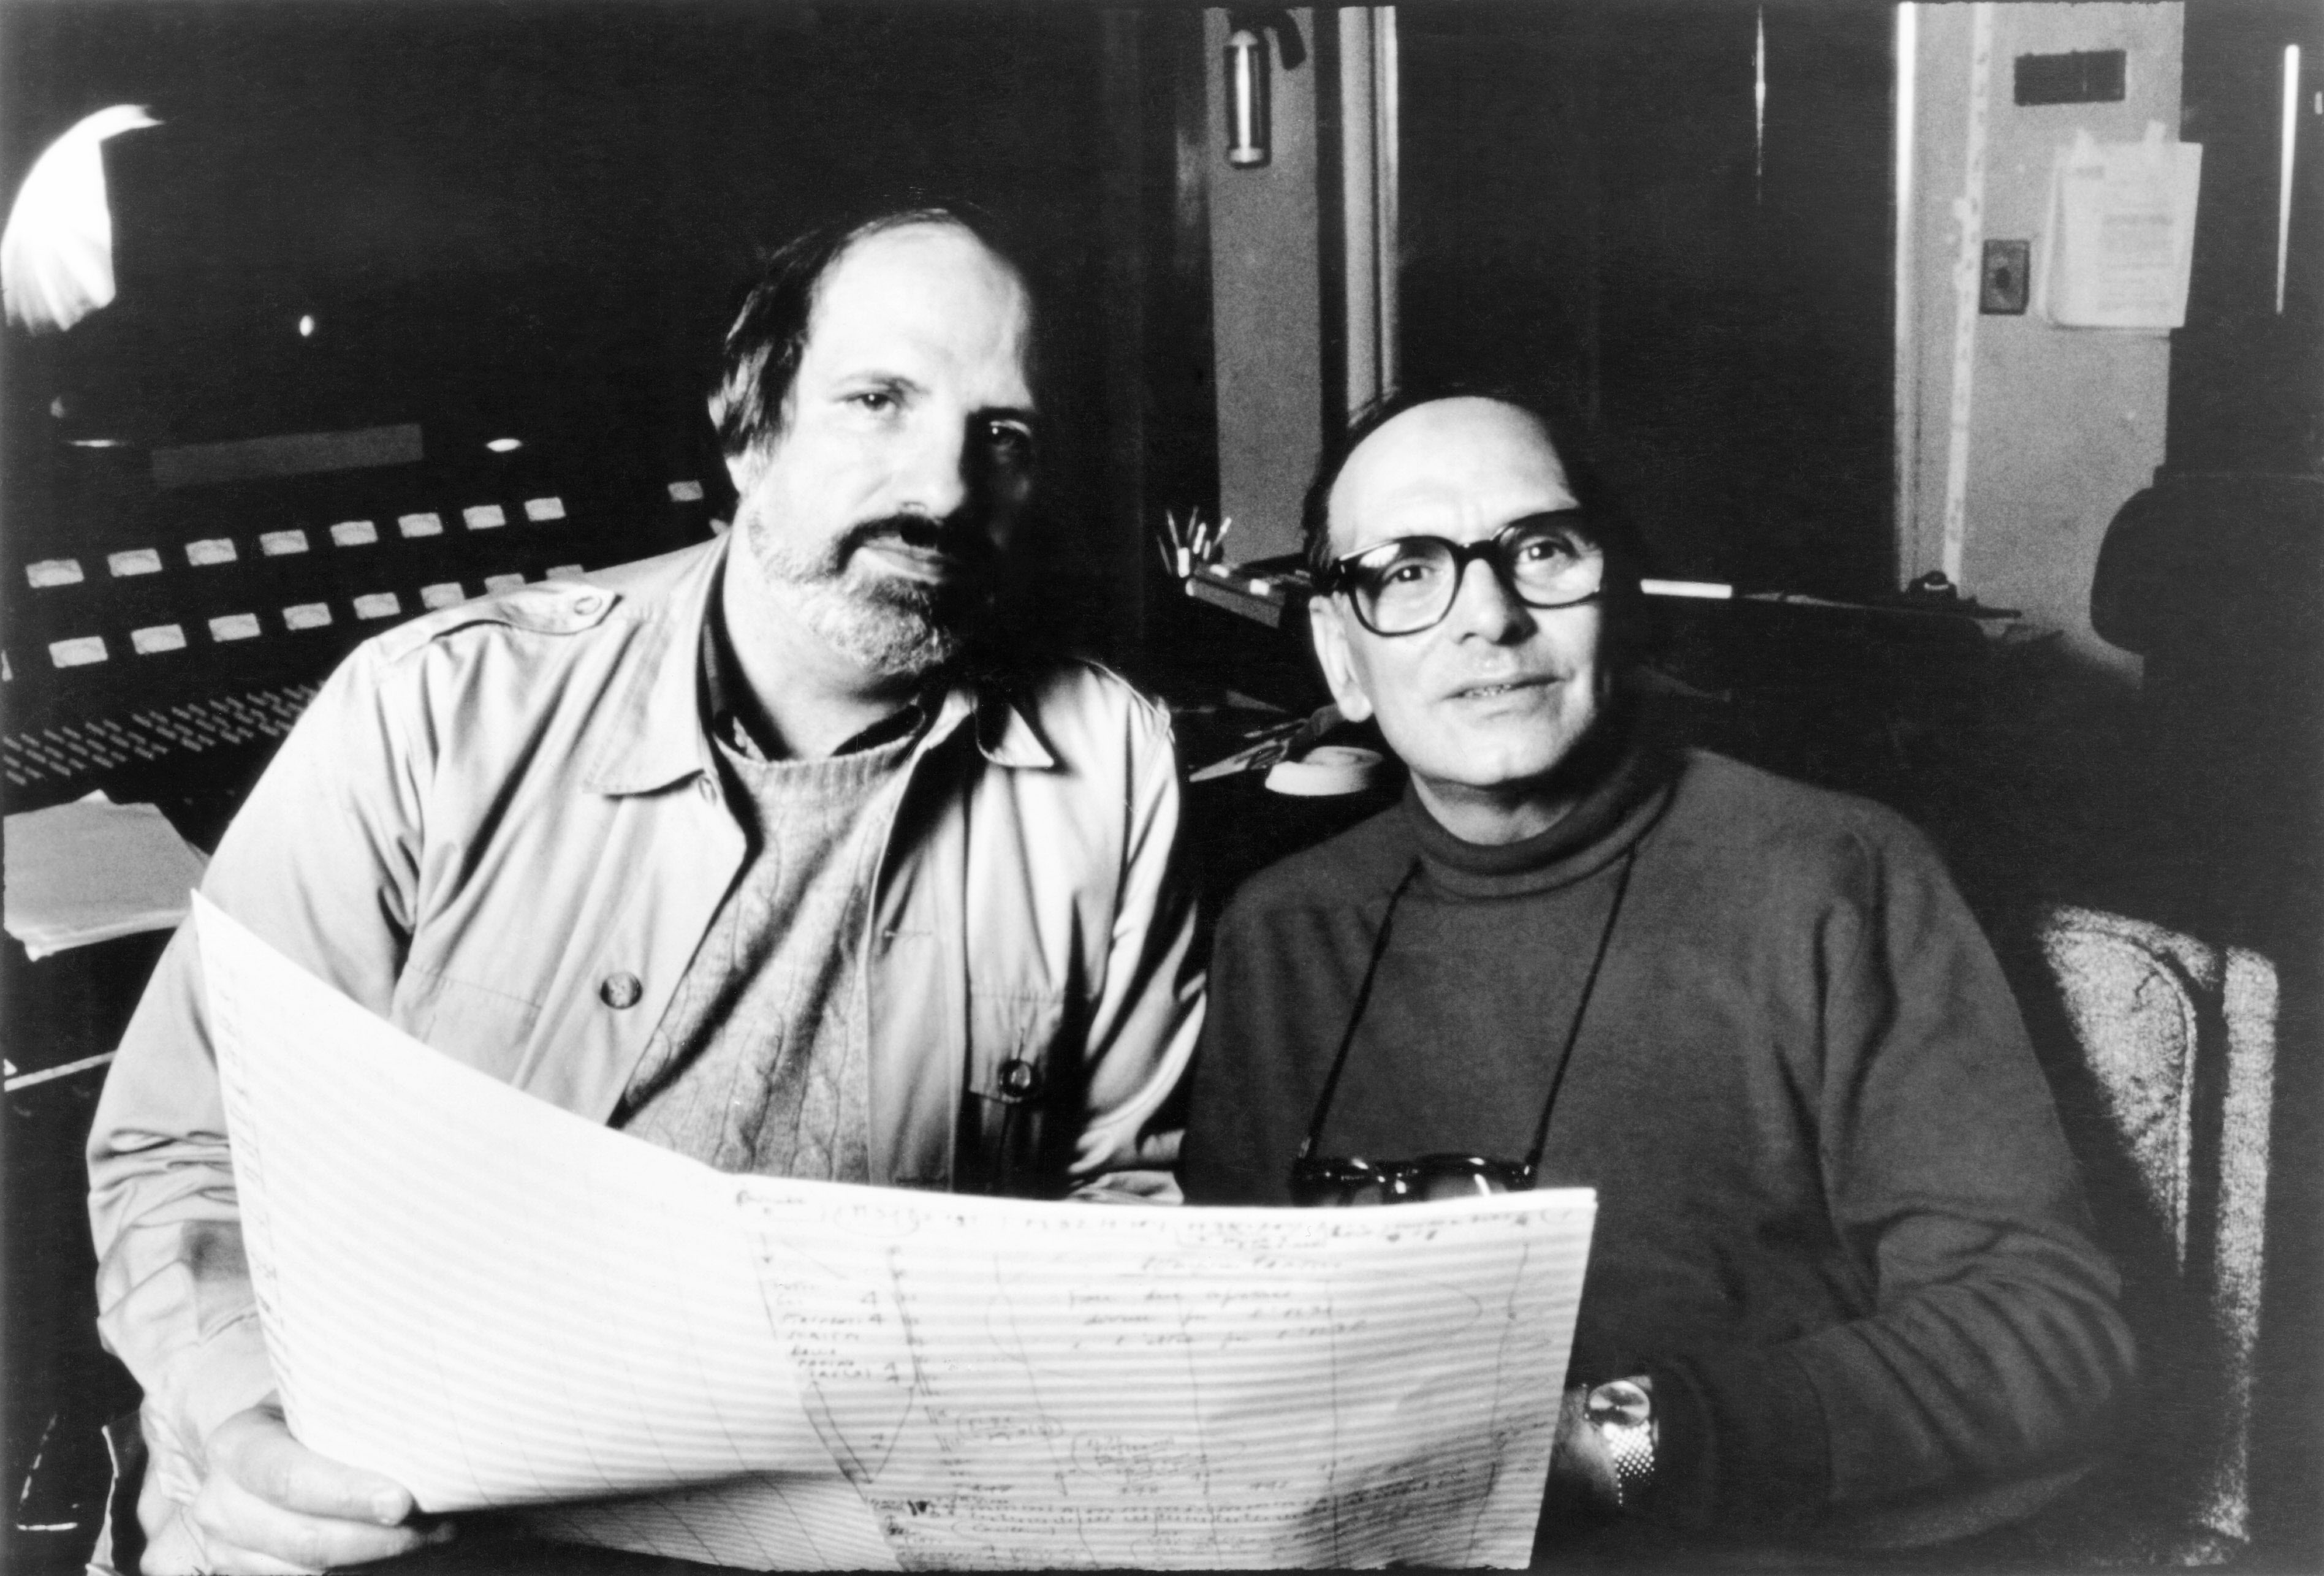 Il regista Brian De Palma in sala registrazione con Ennio Morricone, autore della colonna sonora del film "Gli Intoccabili"